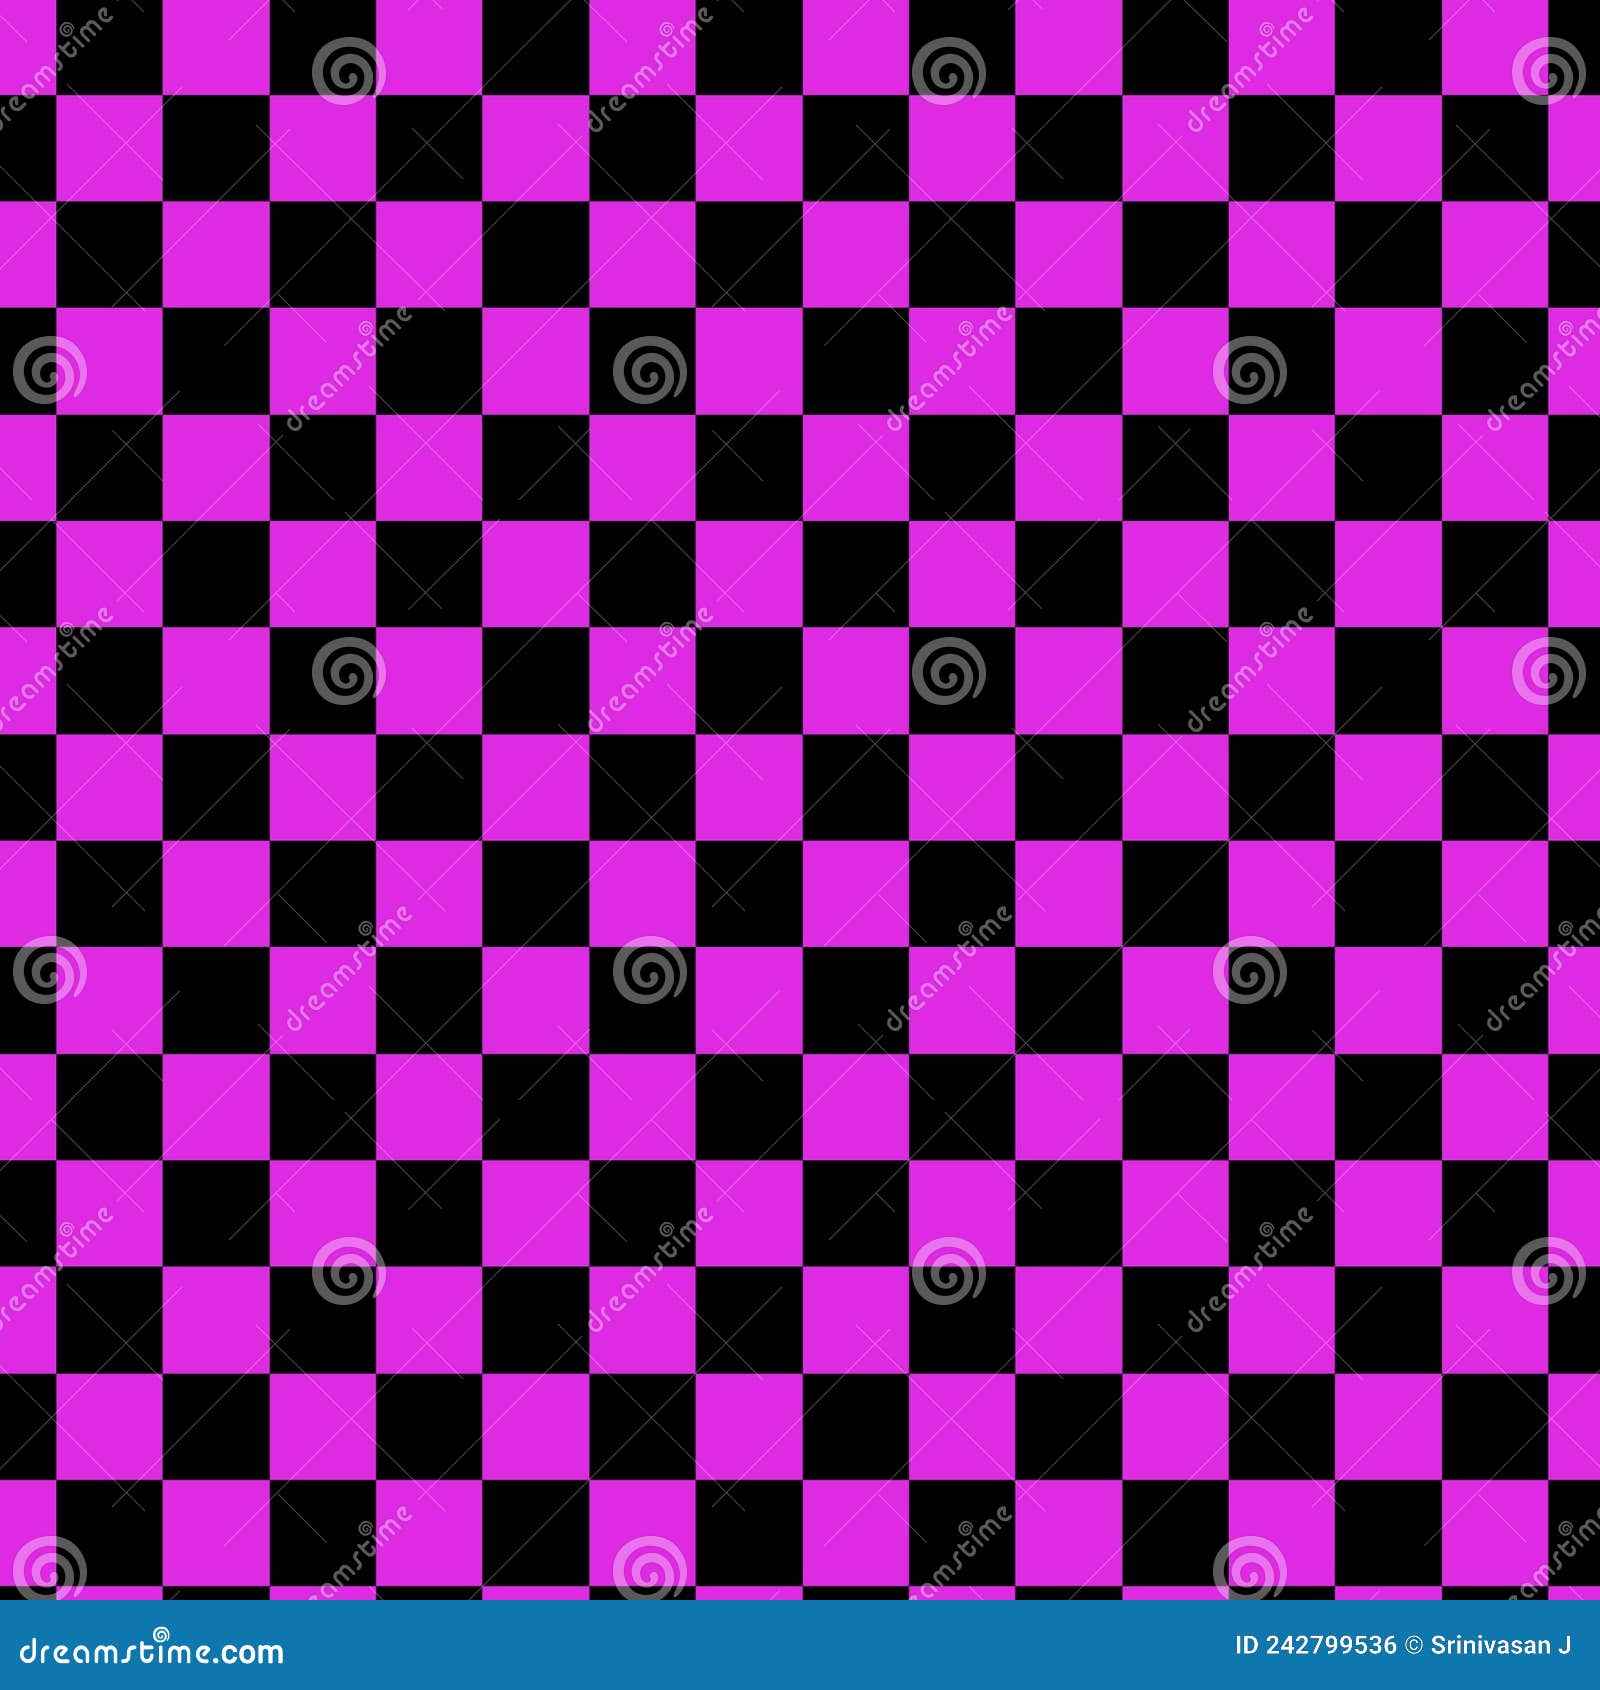 Fundo xadrez rosa e azul com um padrão de quadrados.